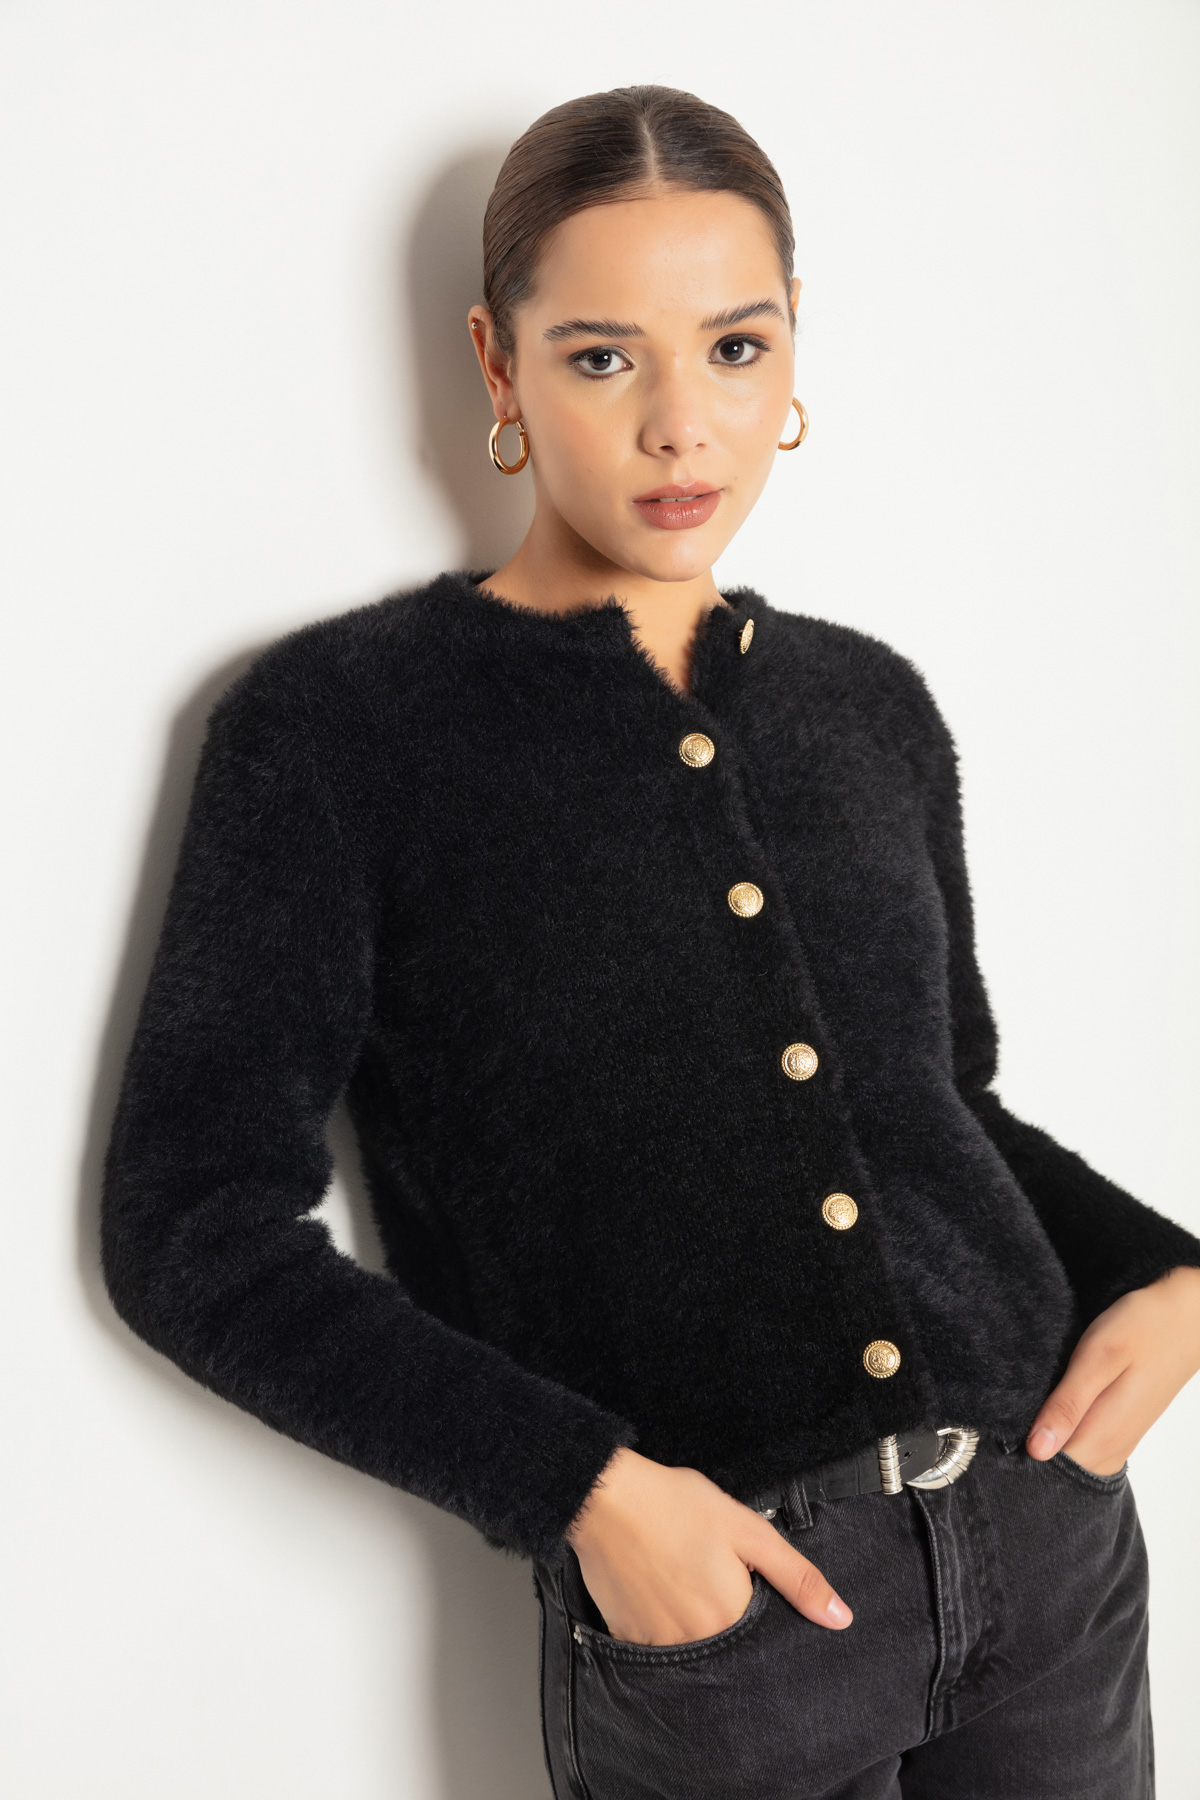 Women's Black Gold Buttoned Knitwear Cardigan